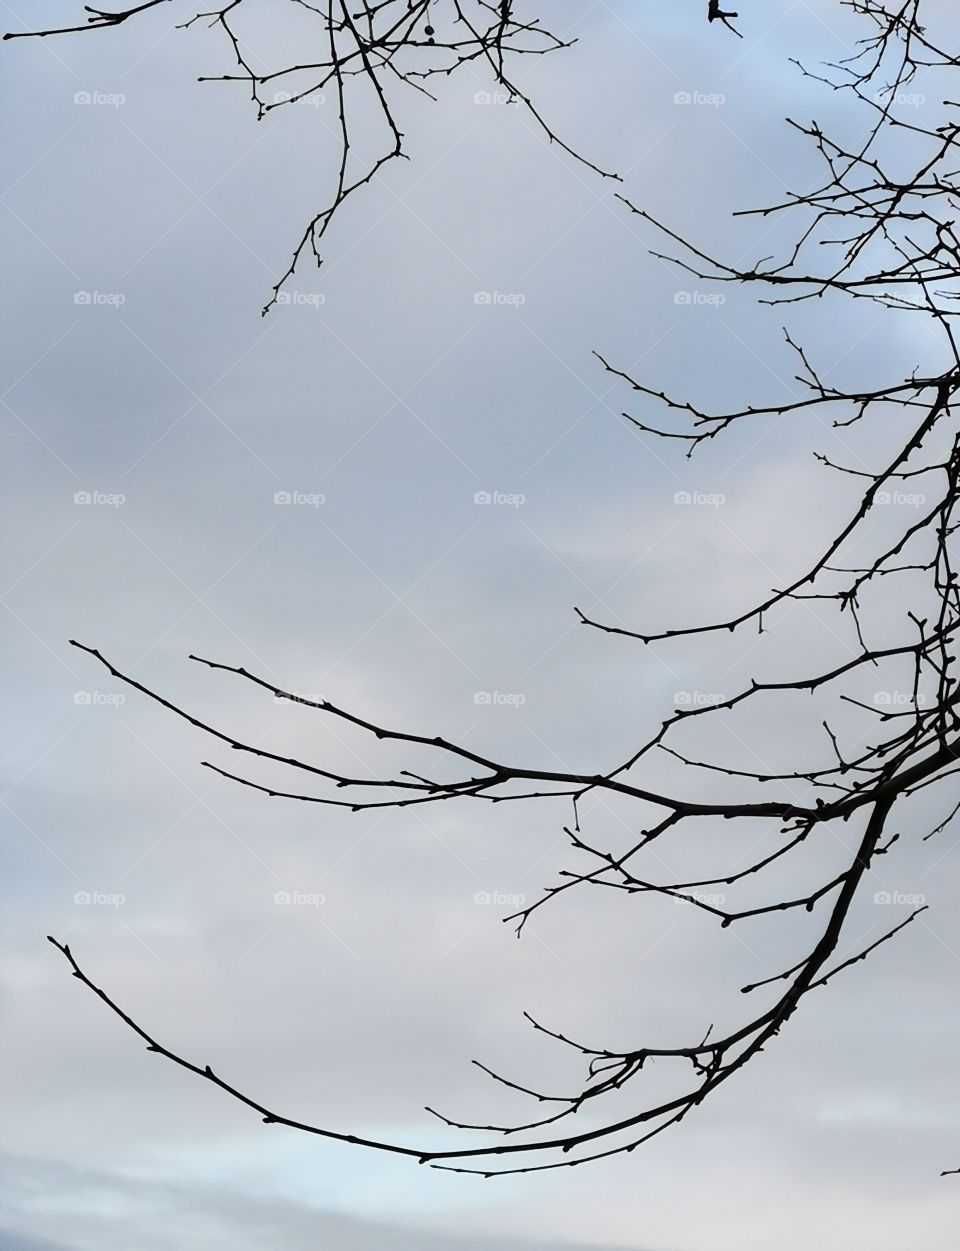 Cielo gris muy de invierno con preciosa rama seca.